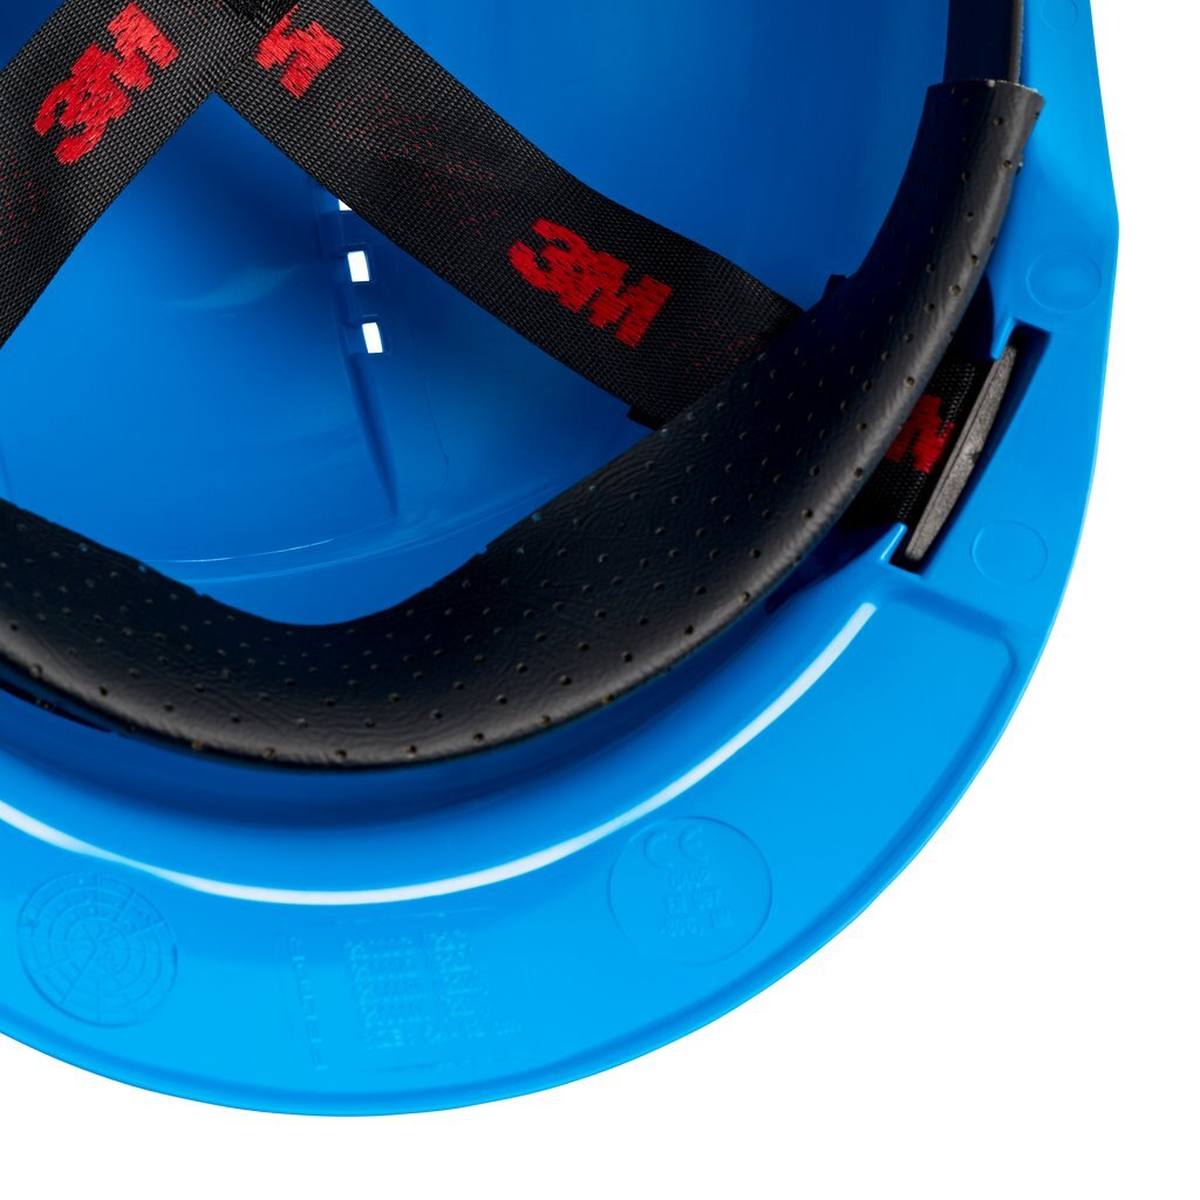 3M Casco de seguridad G3000 G30CUB en azul, ventilado, con uvicator, pinlock y banda de sudor de plástico